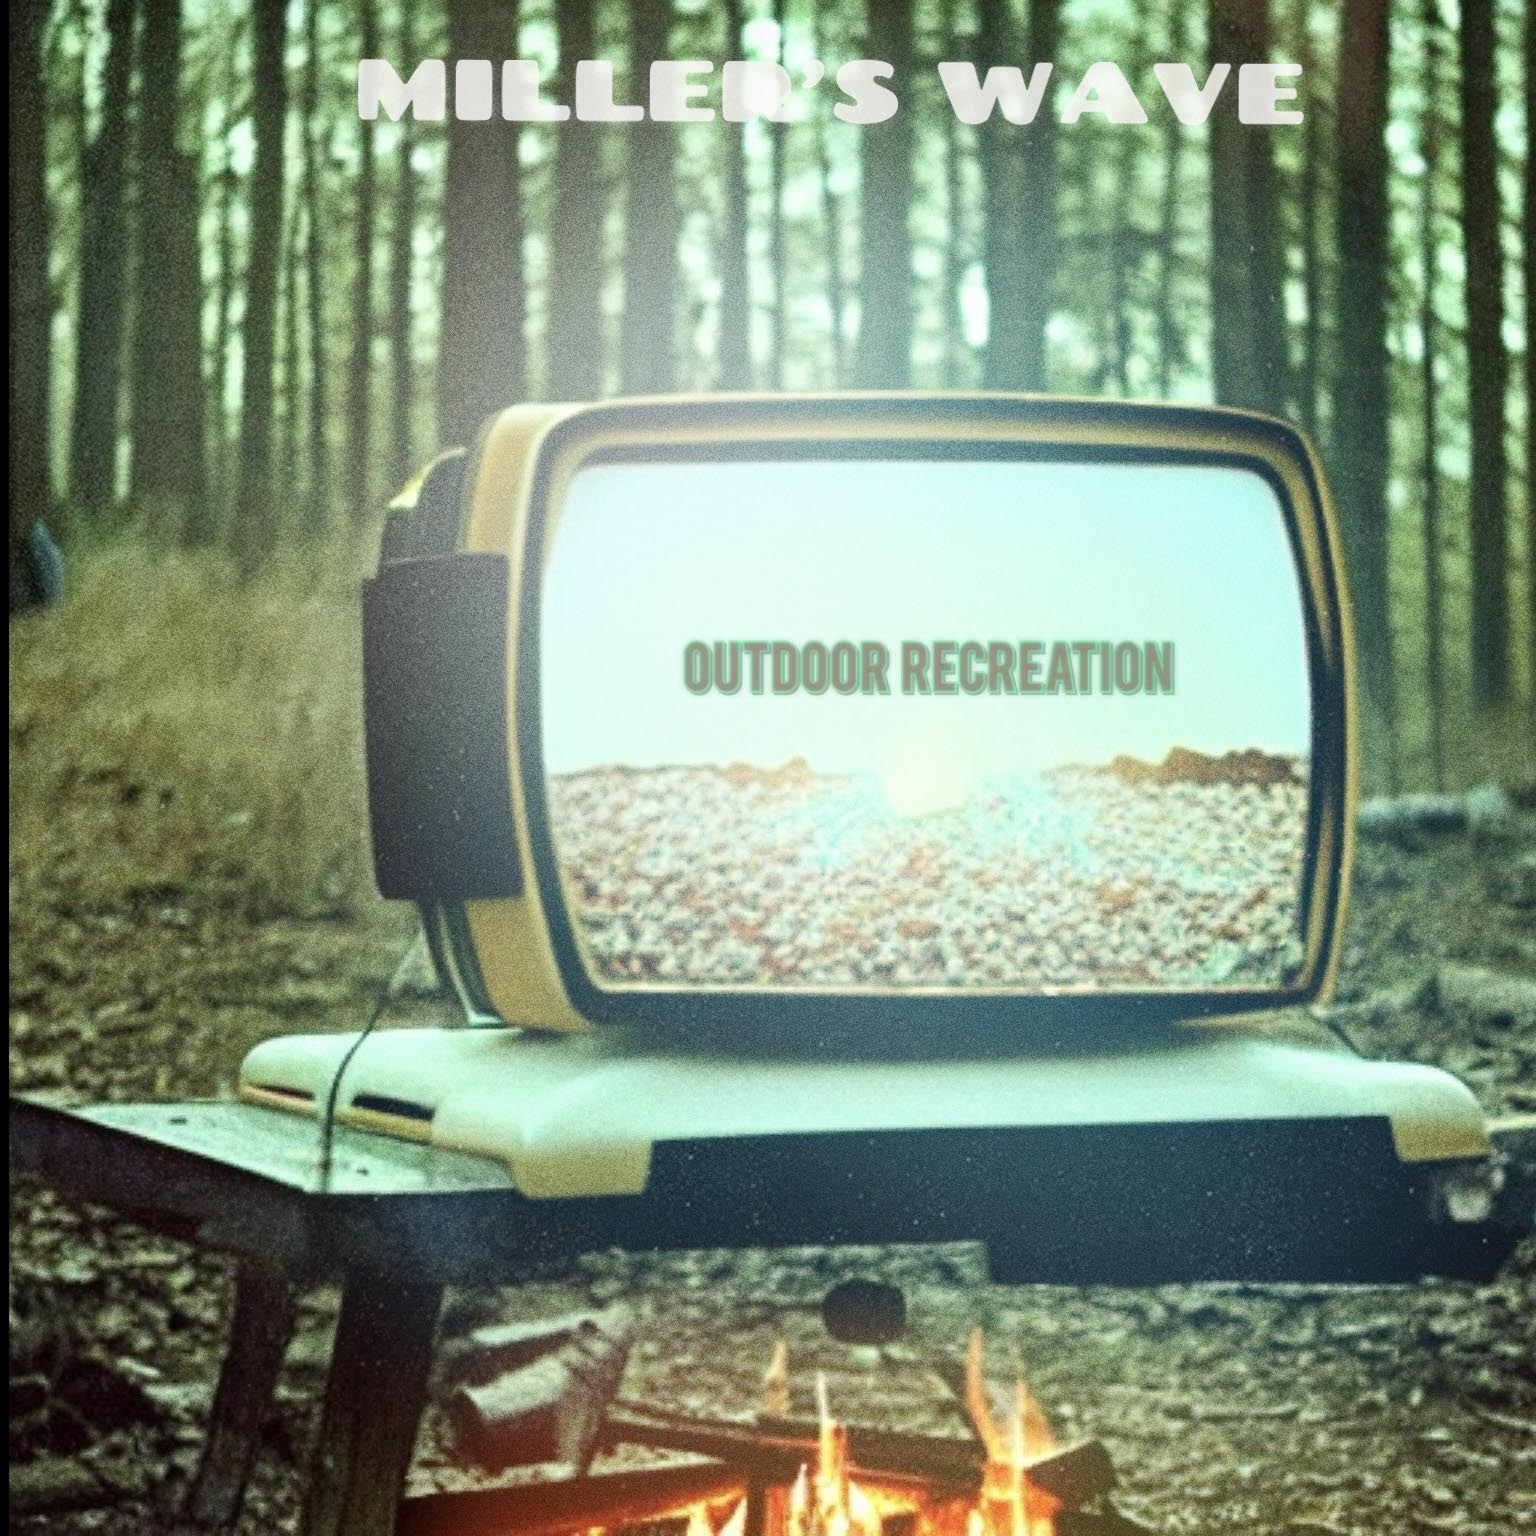 Miller’s Wave e il suo primo album “Outdoor Recreation”